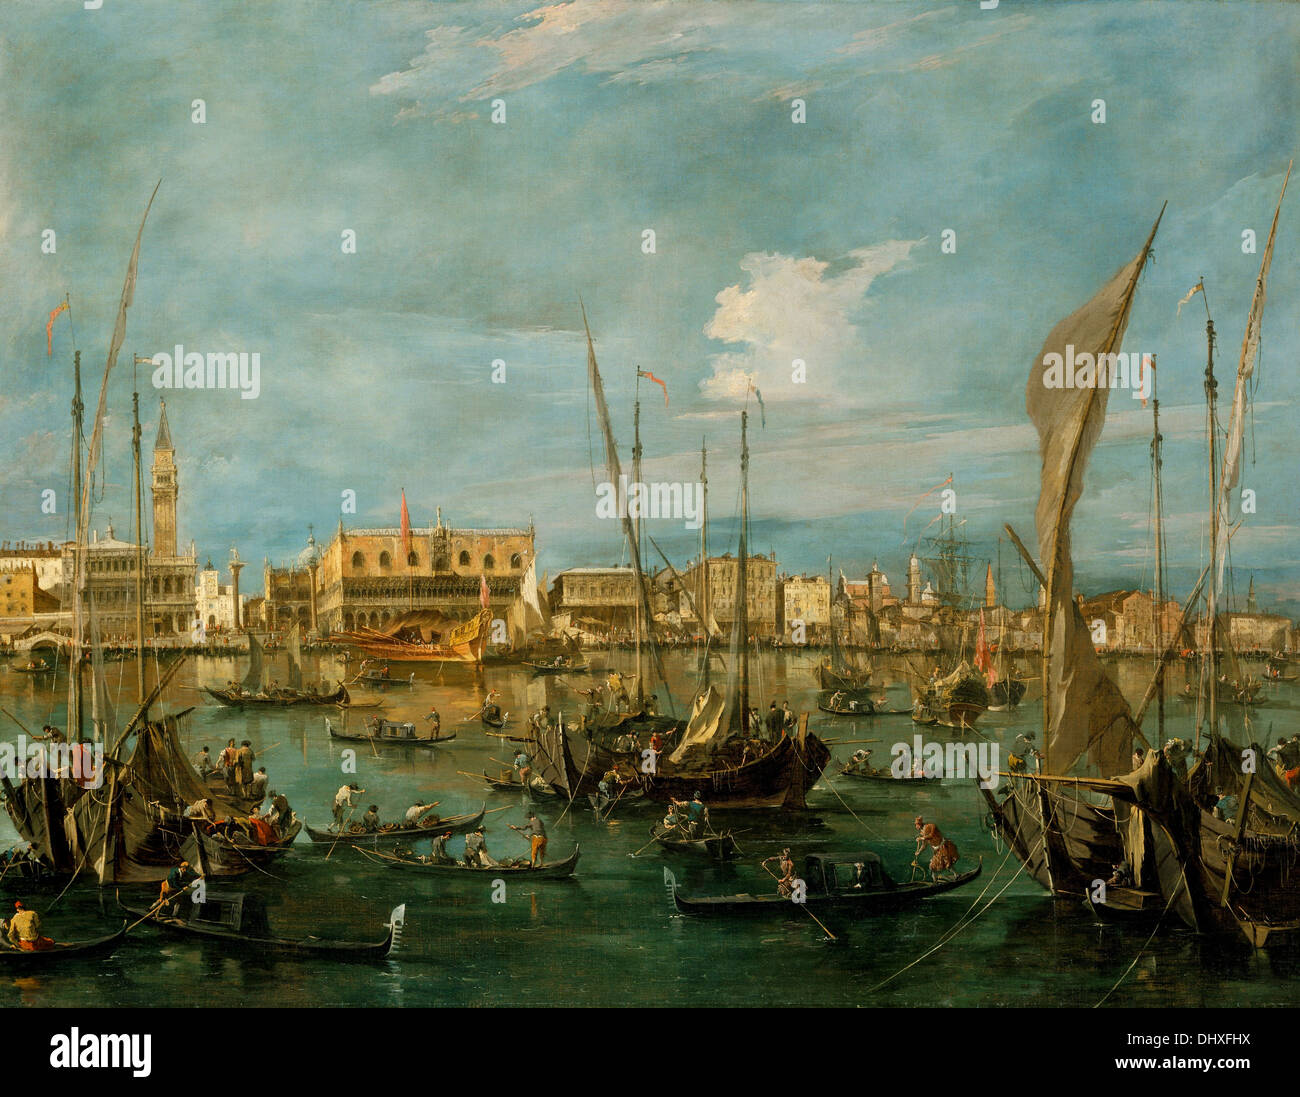 De Venise le Bacino di San Marco - par Francesco Guardi, 1760 Banque D'Images